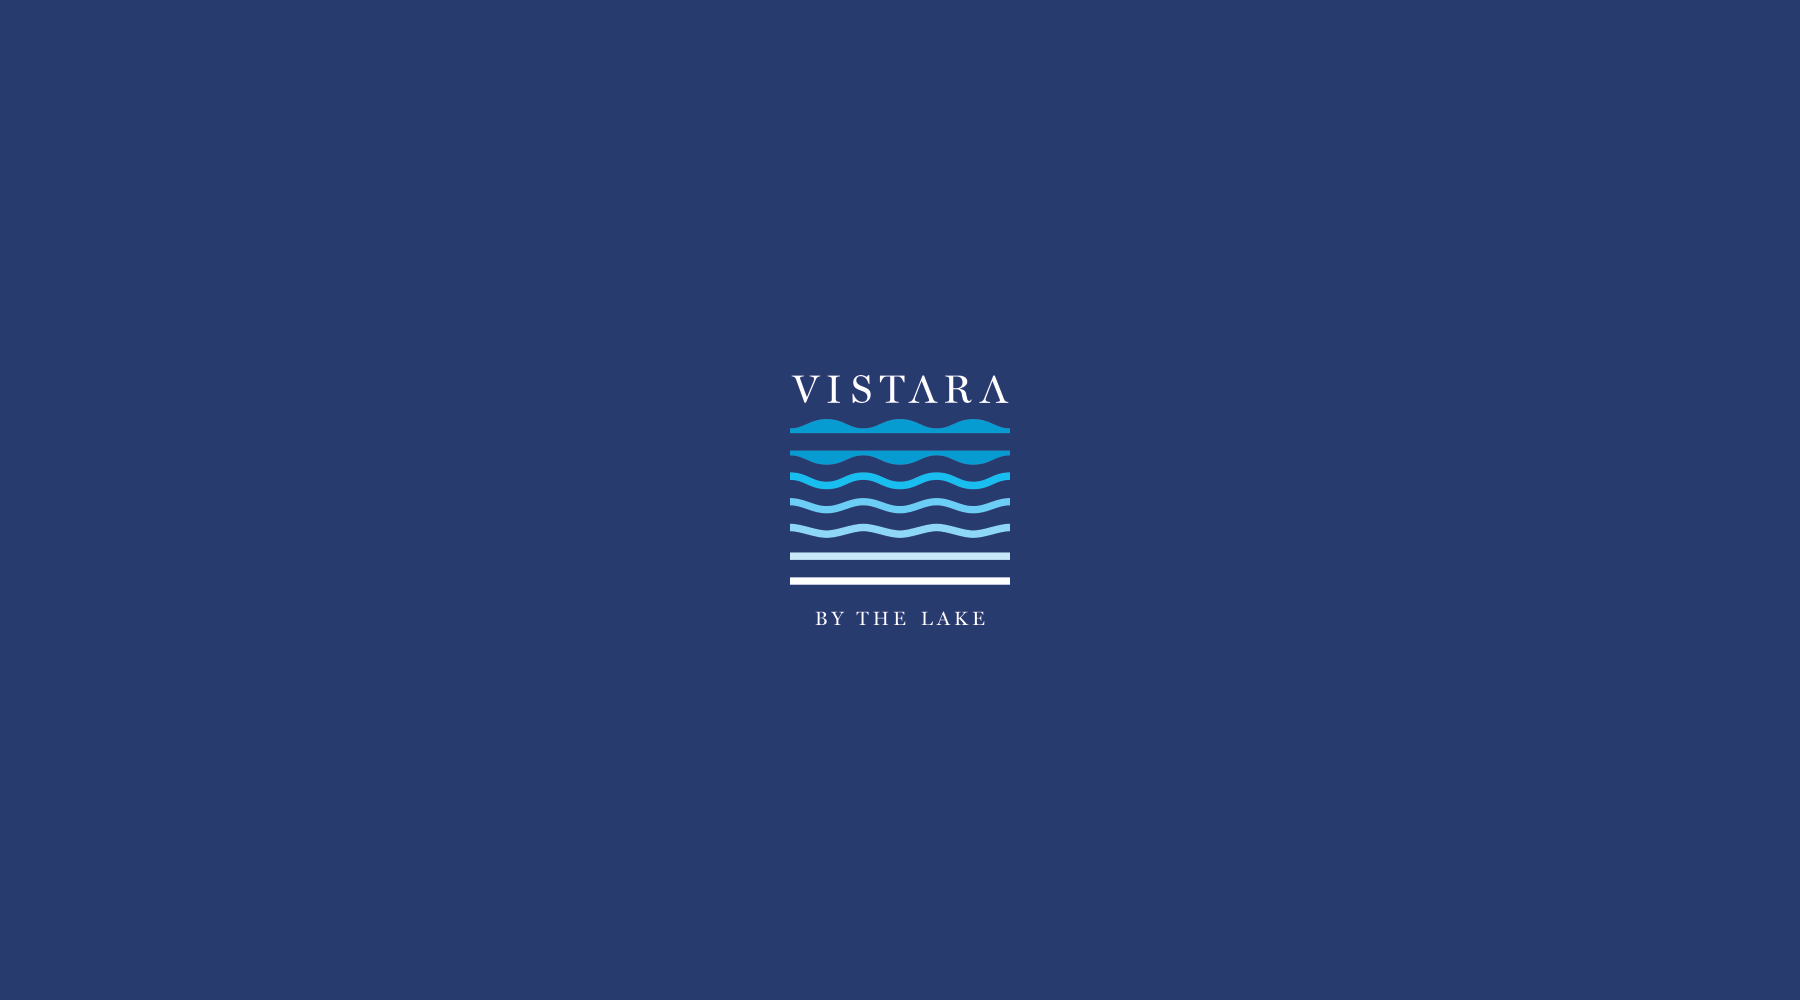 Vistara resort branding: logo aimation